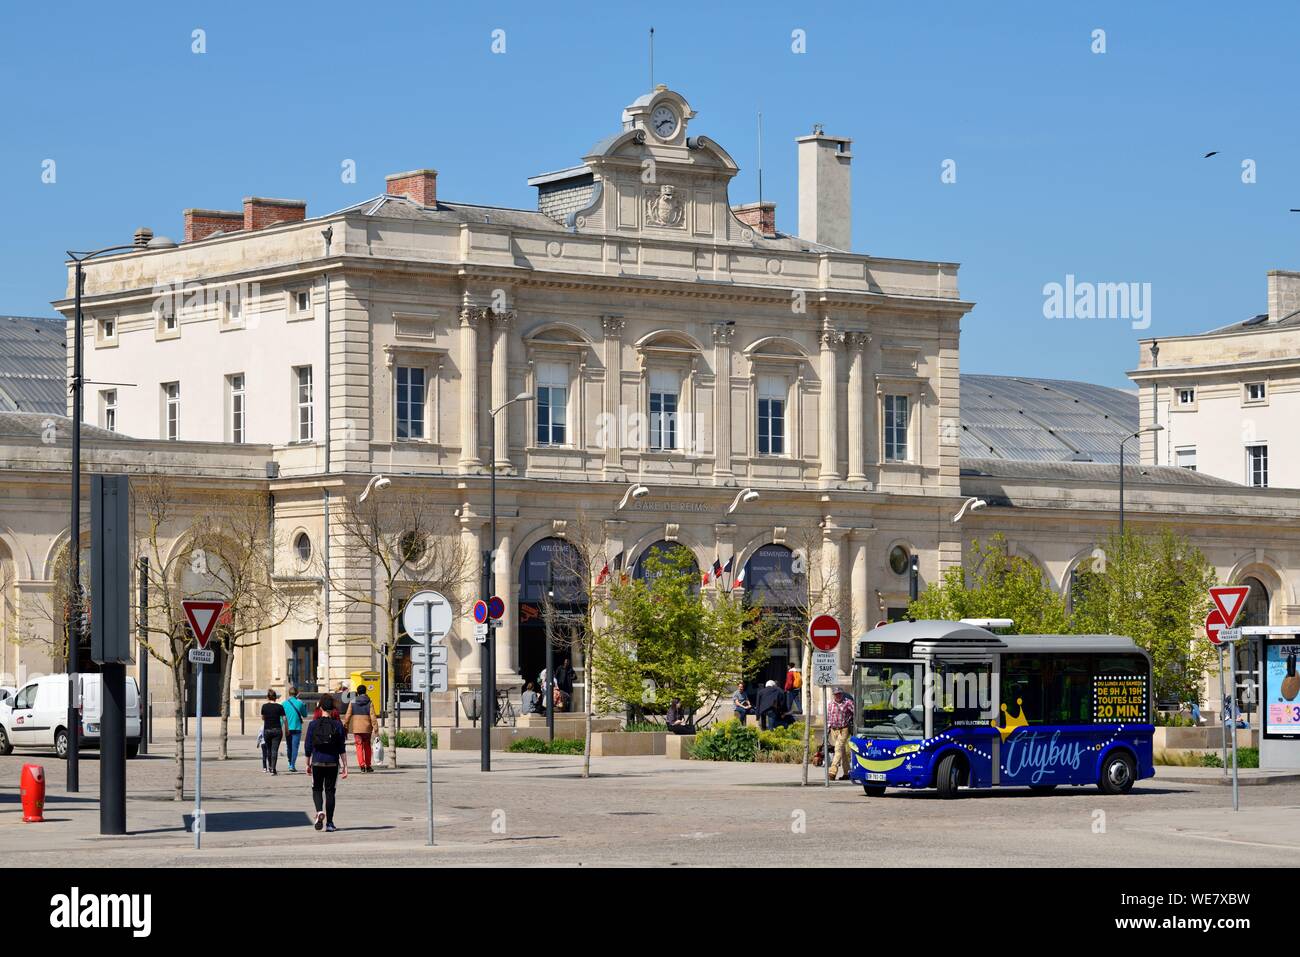 Frankreich, Paris, Reims, Bahnhof, Fassade, blau Shuttle Bus vor der Station geparkt Stockfoto